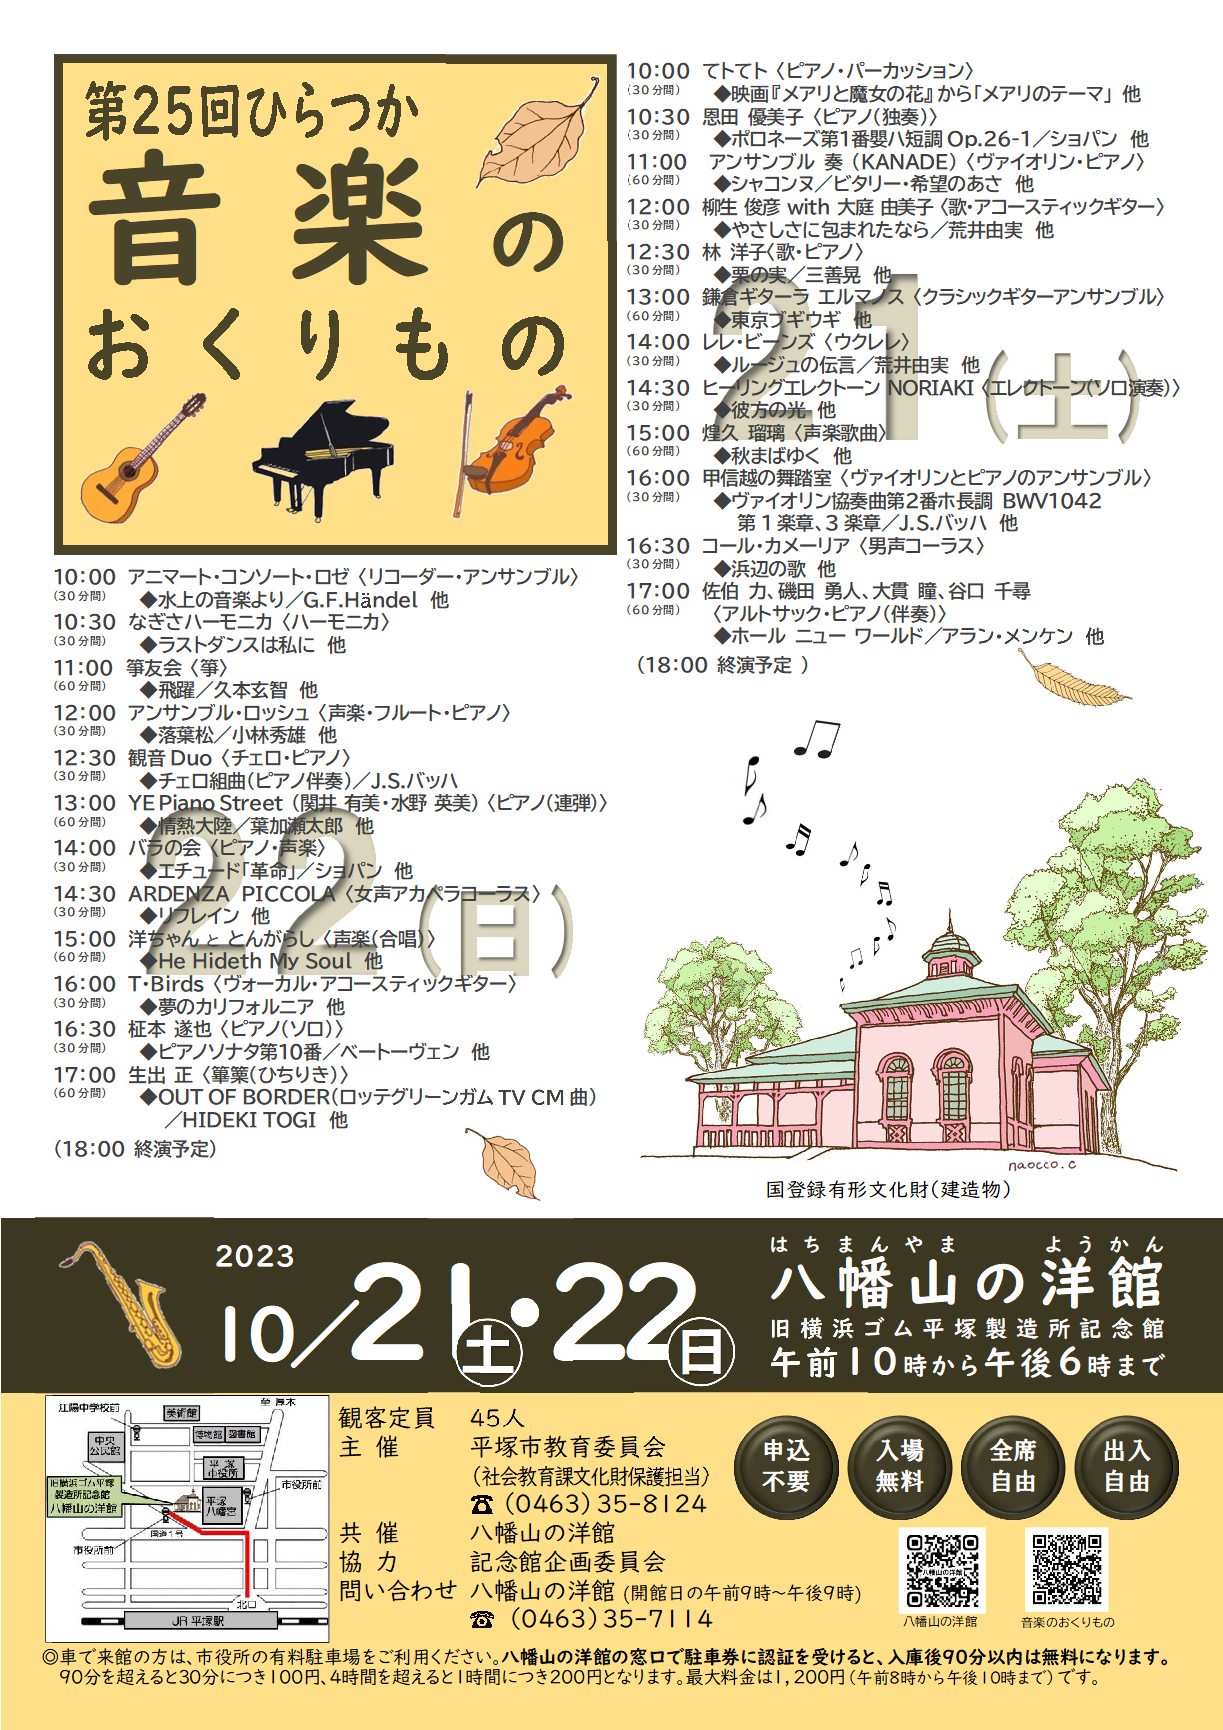 八幡山の洋館「第25回ひらつか音楽のおくりもの」が10月21日土曜日、22日日曜日に開催されます。両日で24組が出演します。